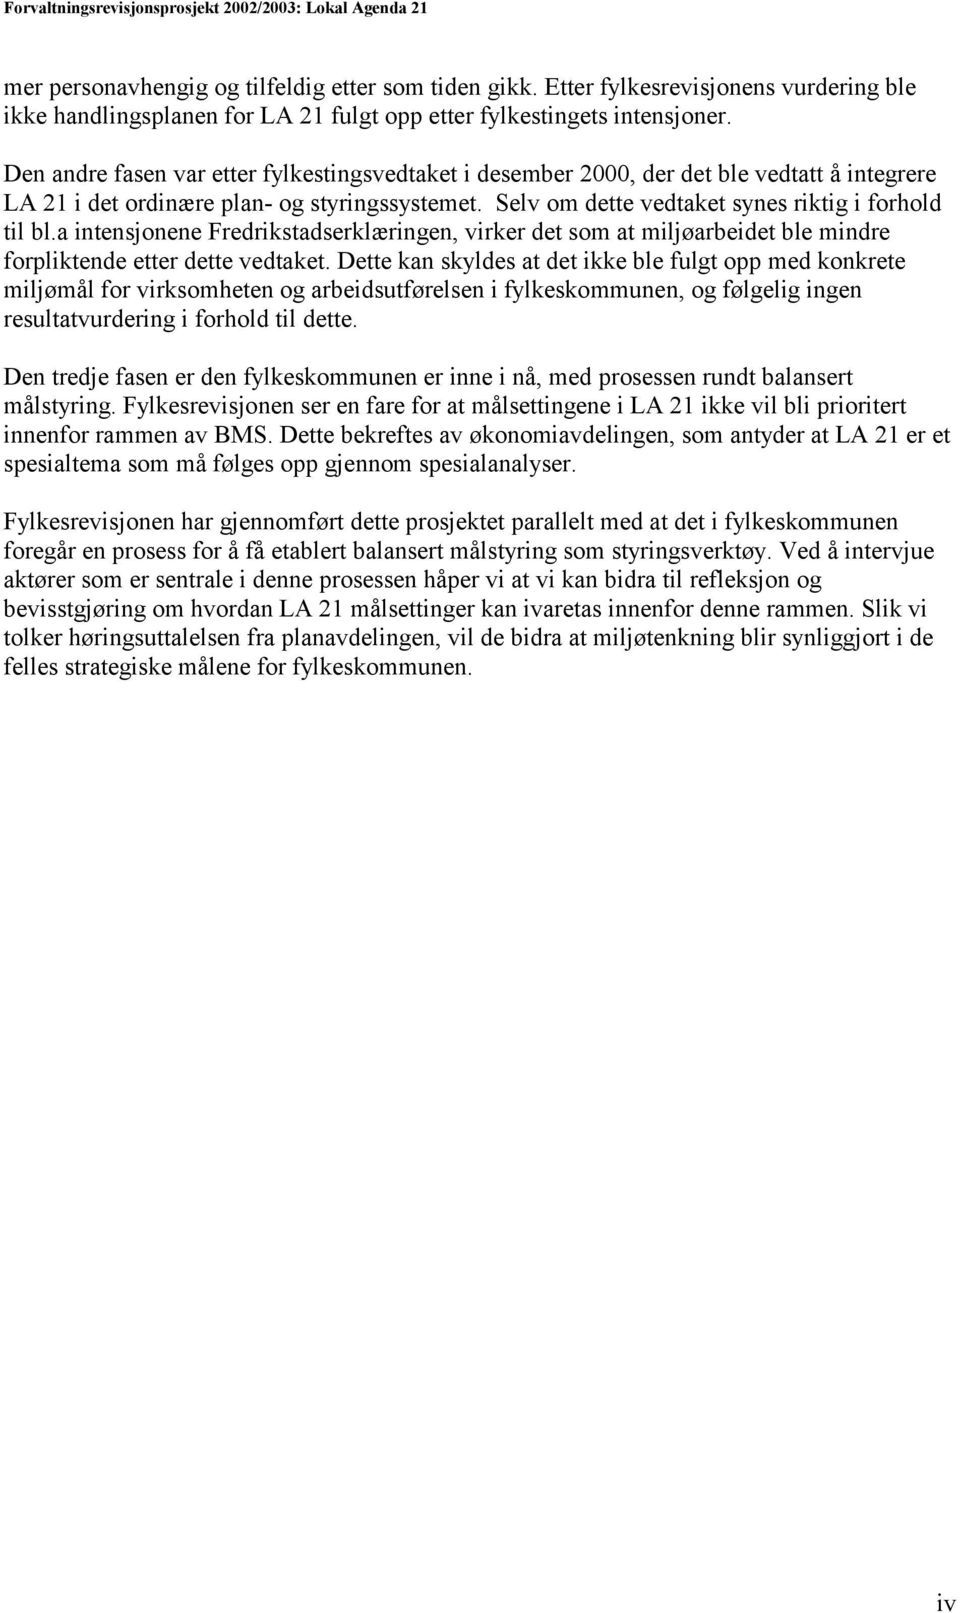 a intensjonene Fredrikstadserklæringen, virker det som at miljøarbeidet ble mindre forpliktende etter dette vedtaket.